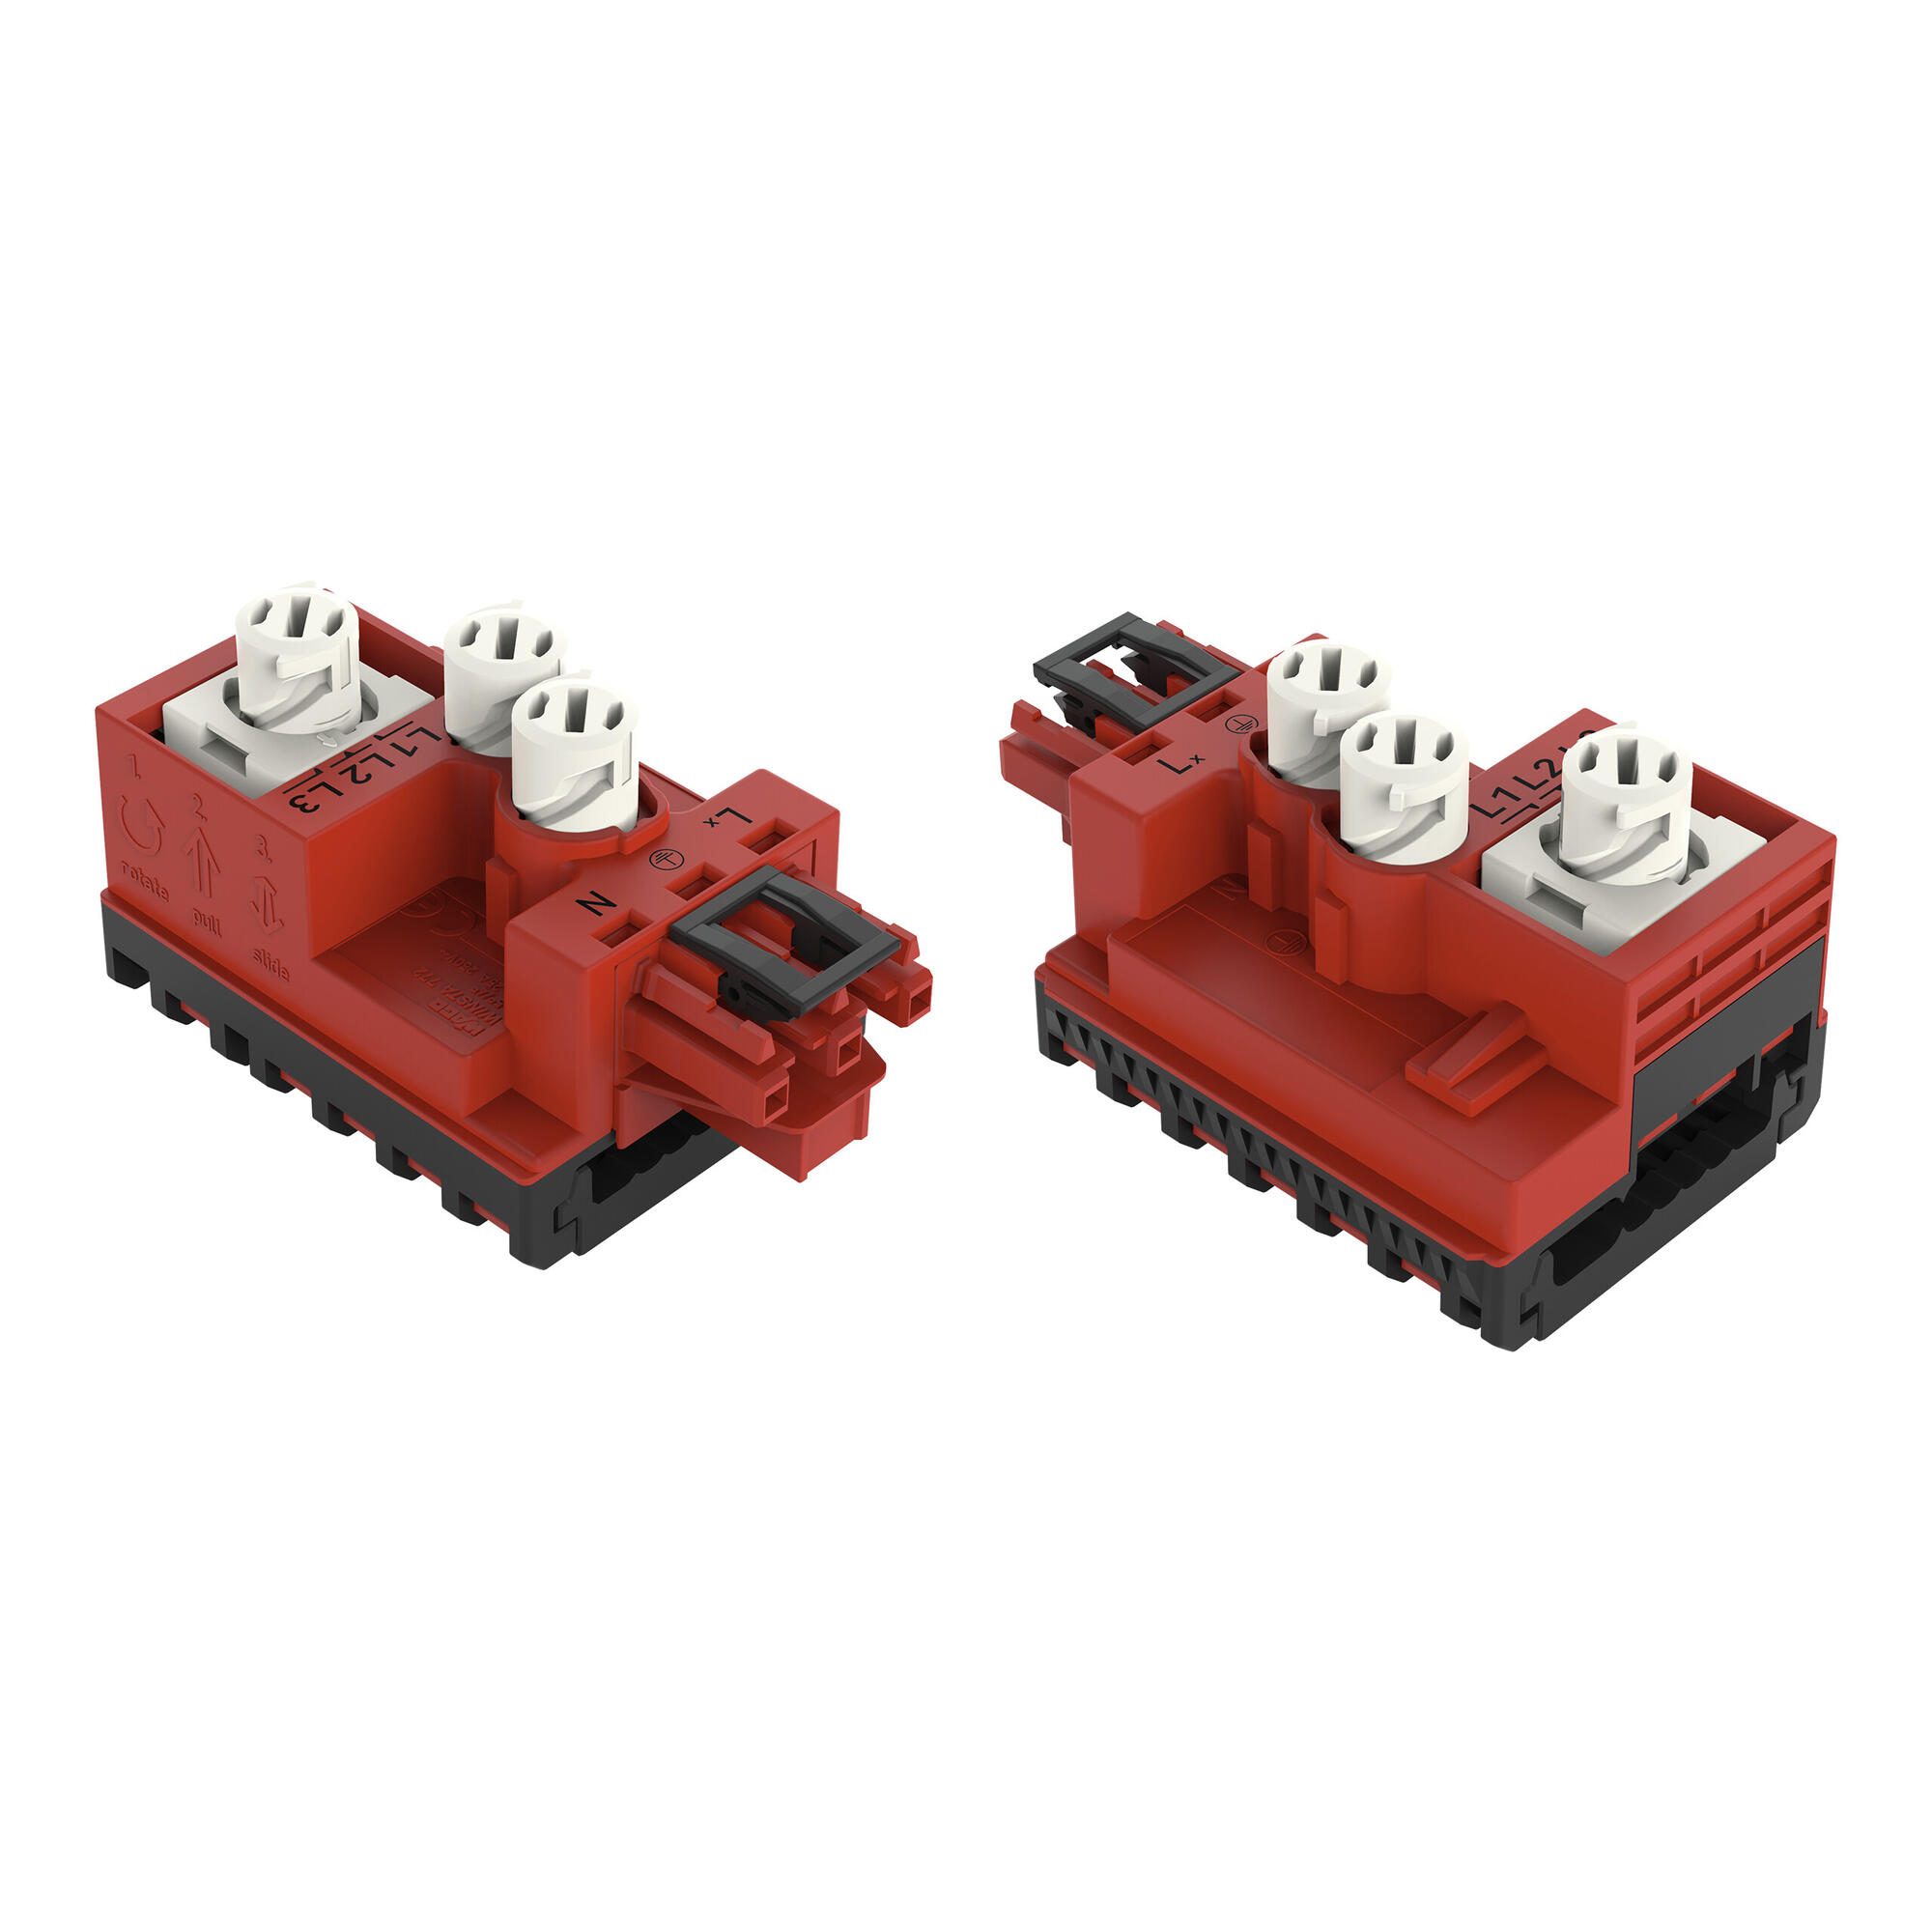 分接模块; 适用于扁平电缆; 5 x 2.5 mm² + 2 x 1.5 mm²; 3极; 类型 P; 在输出侧接有线缆; 红色